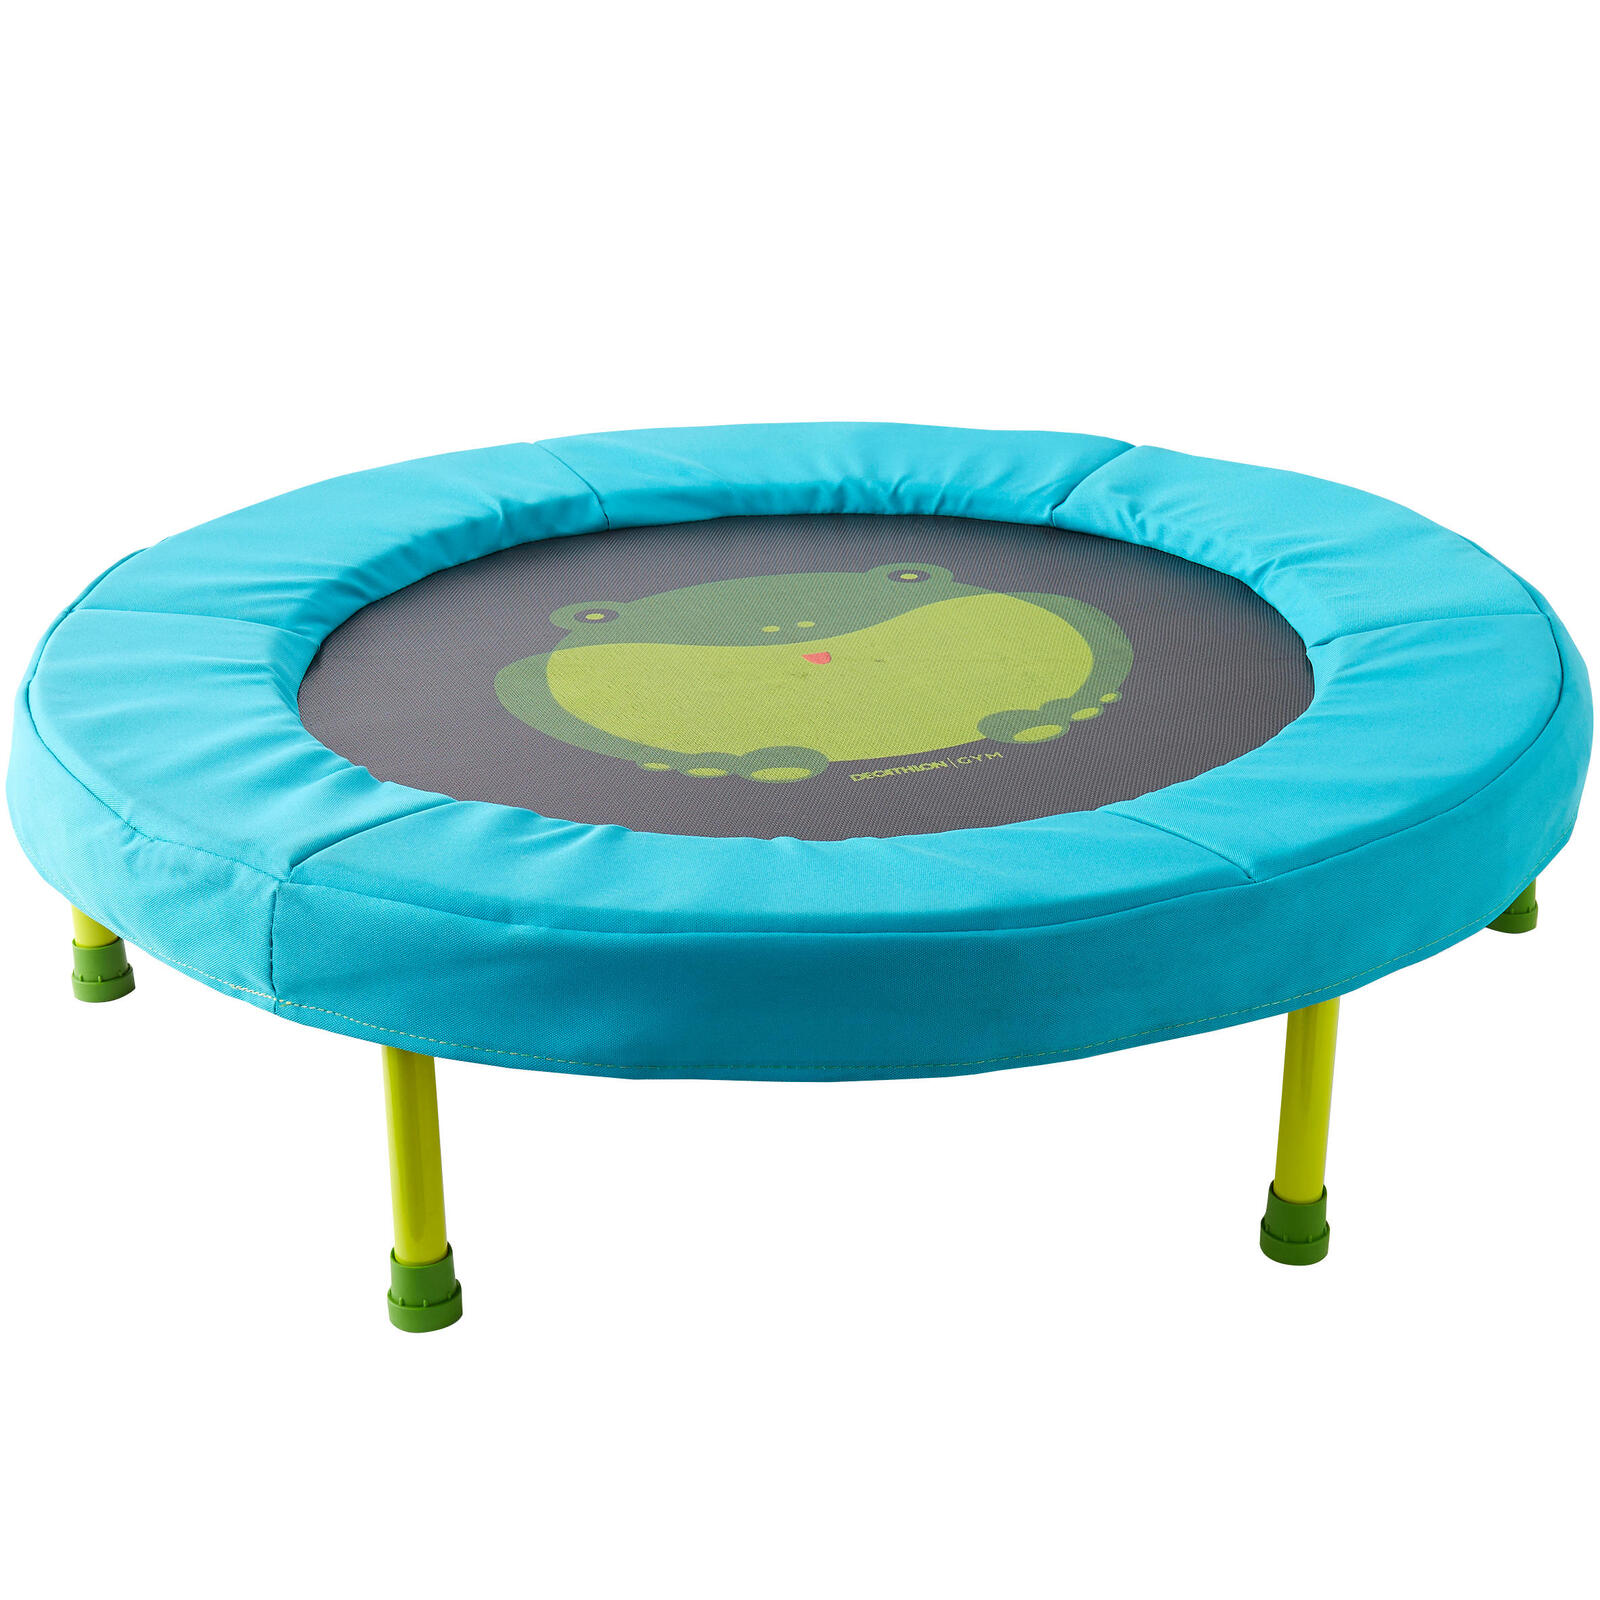 Baby gym mini trampoline